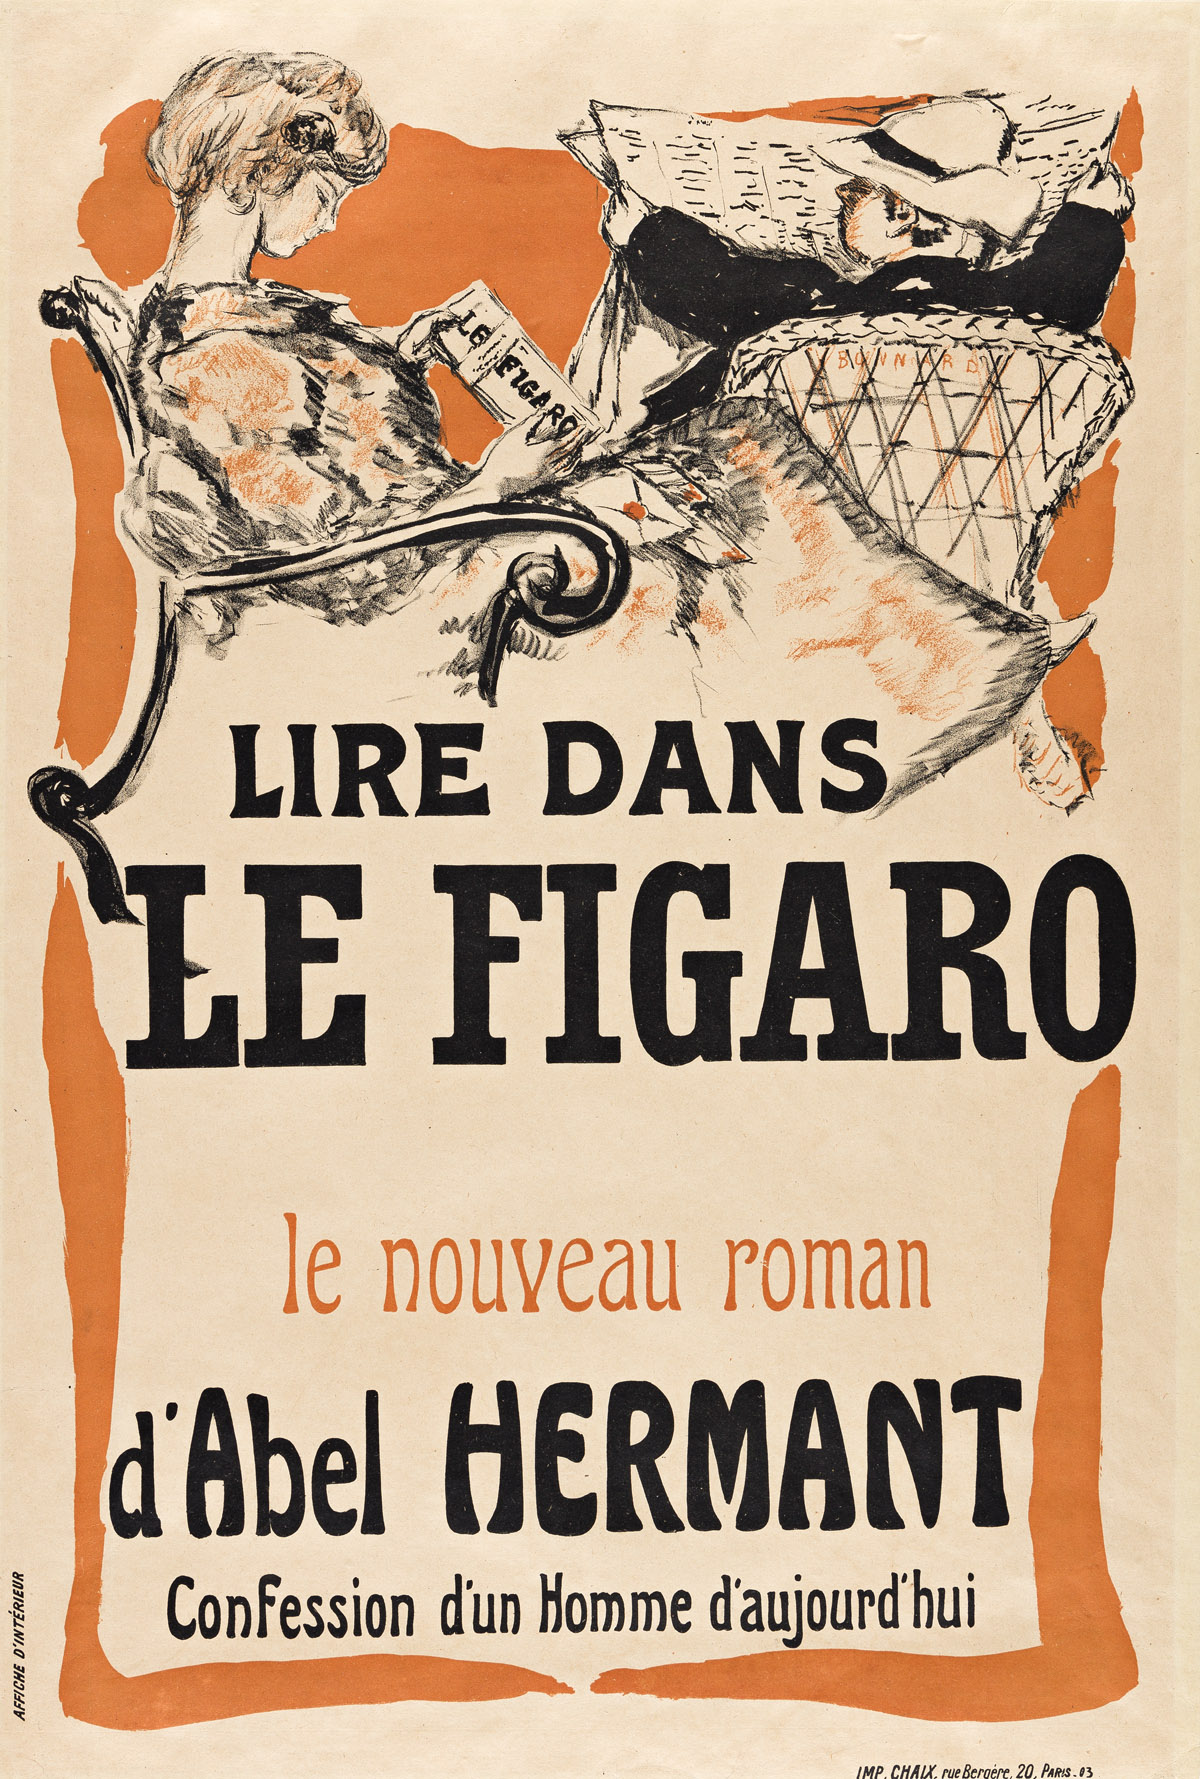 PIERRE BONNARD (1867-1947).  LIRE DANS LE FIGARO. 1903. 22¼x15 inches, 56½x38 cm. Chaix, Paris.